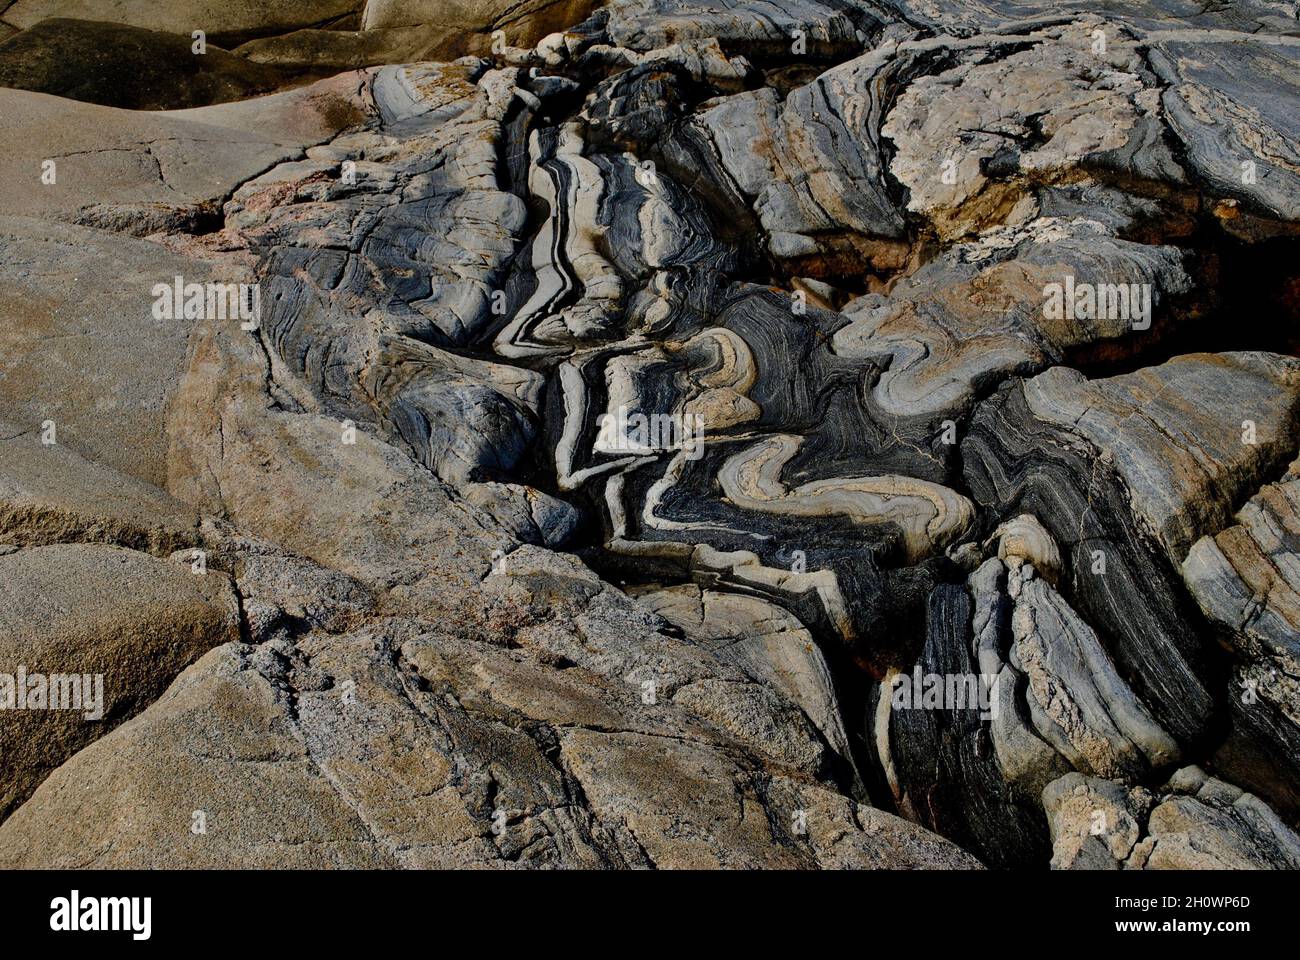 Formazioni rocciose su un'isola dell'arcipelago di Fjällbacka, sulla costa occidentale della Svezia Foto Stock